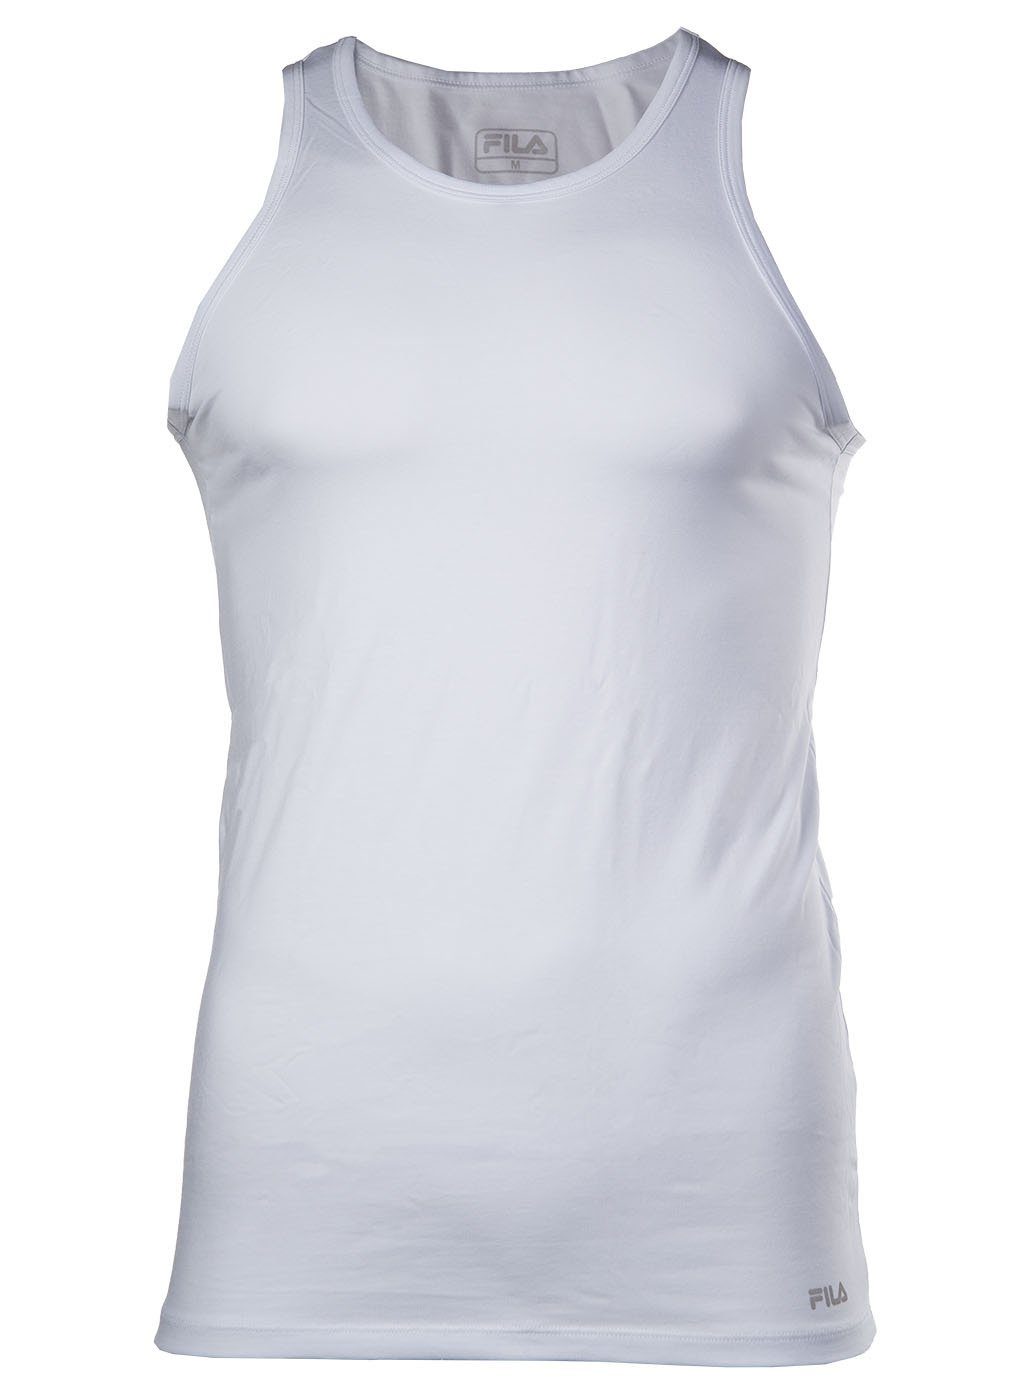 Fila Unterhemd HerrenTank Top - Unterhemd, Rundhals, Single Weiß